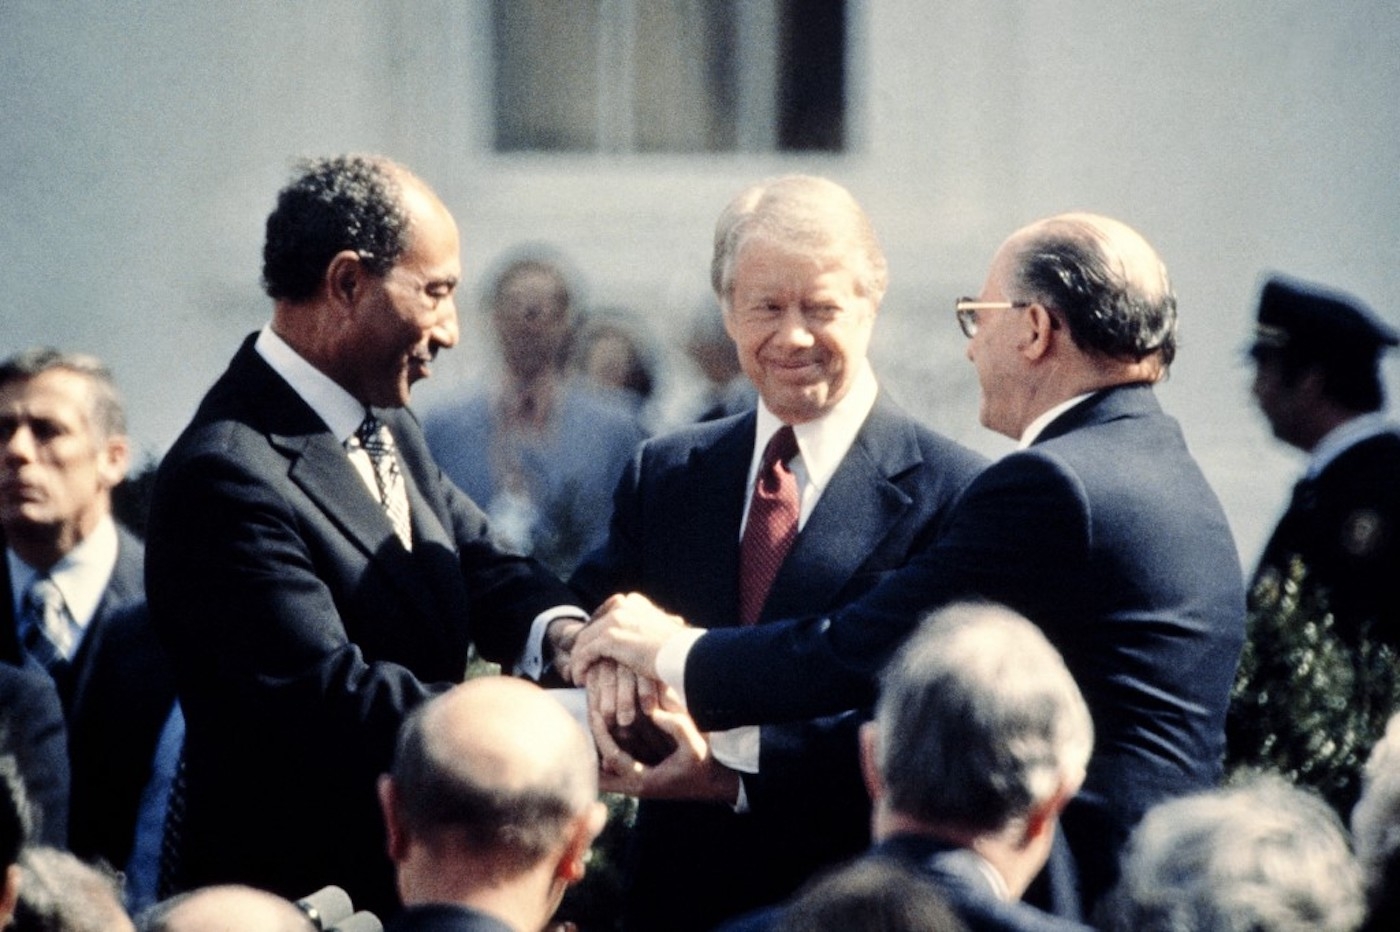 Le président américain Jimmy Carter félicite Anouar al-Sadate et le Premier ministre israélien Menahem Begin dans une poignée de main à trois, le 26 mars 1979 sur la pelouse nord de la Maison-Blanche, après avoir signé le traité de paix historique parrainé par les États-Unis entre Israël et l’Égypte. En 1978, Israël et l’Égypte avaient scellé un accord promettant la paix et la sécurité aux peuples du Moyen-Orient, les accords de Camp David. (AFP)